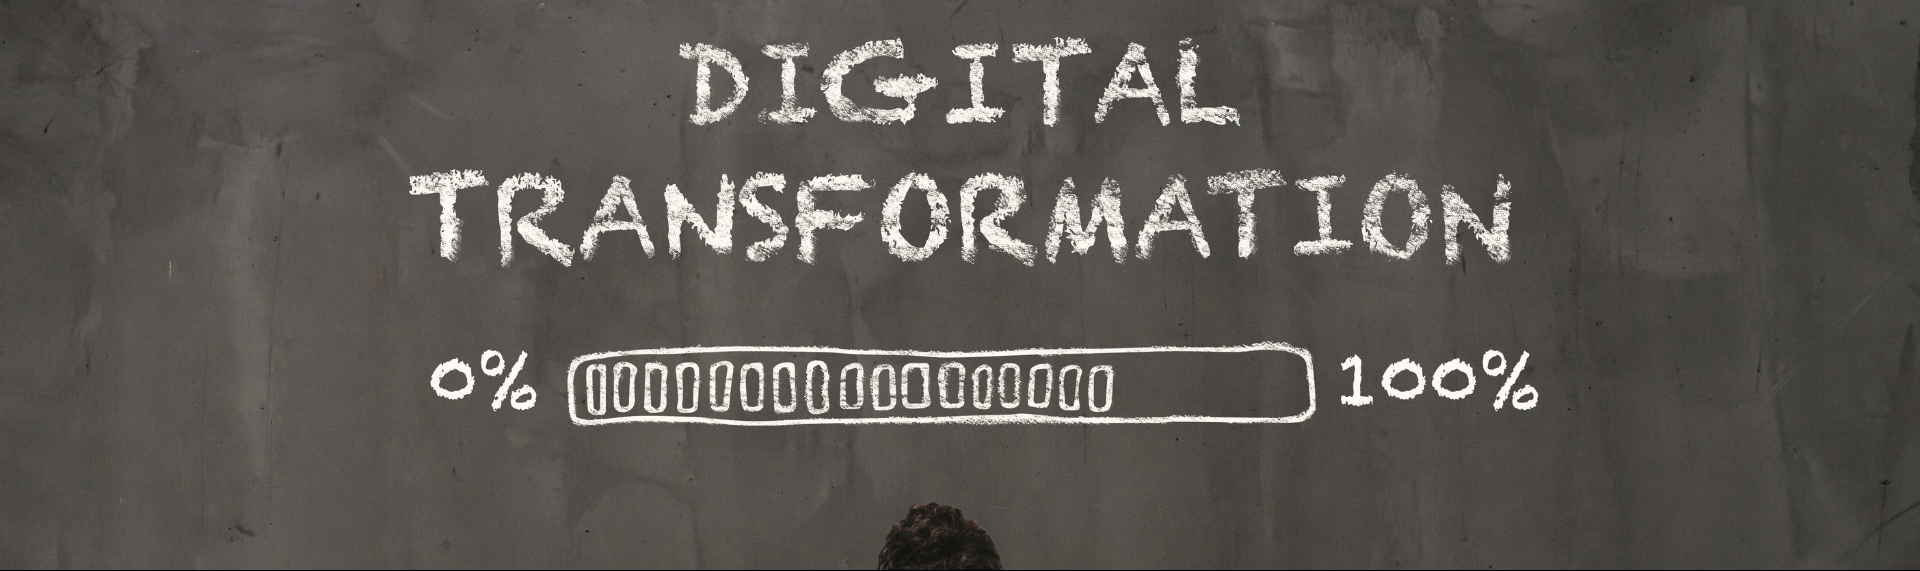 Artigo: Desafios do CDO na Transformação Digital